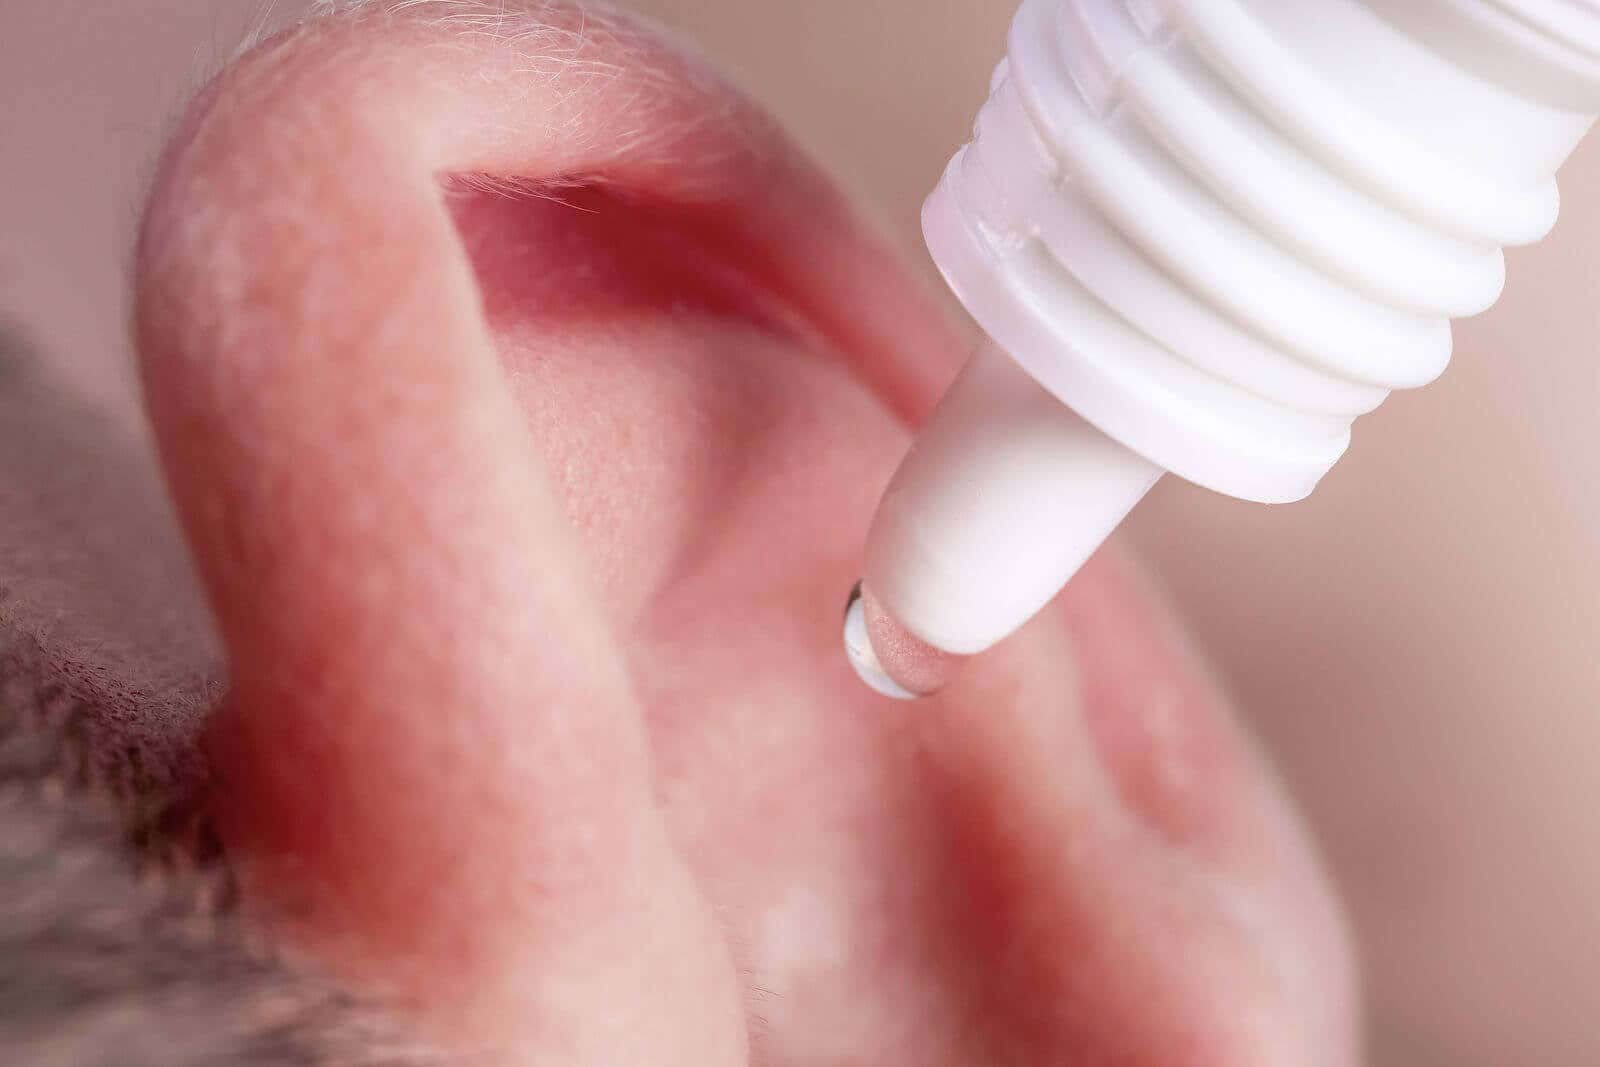 Limpiar los oídos de forma segura y saludable